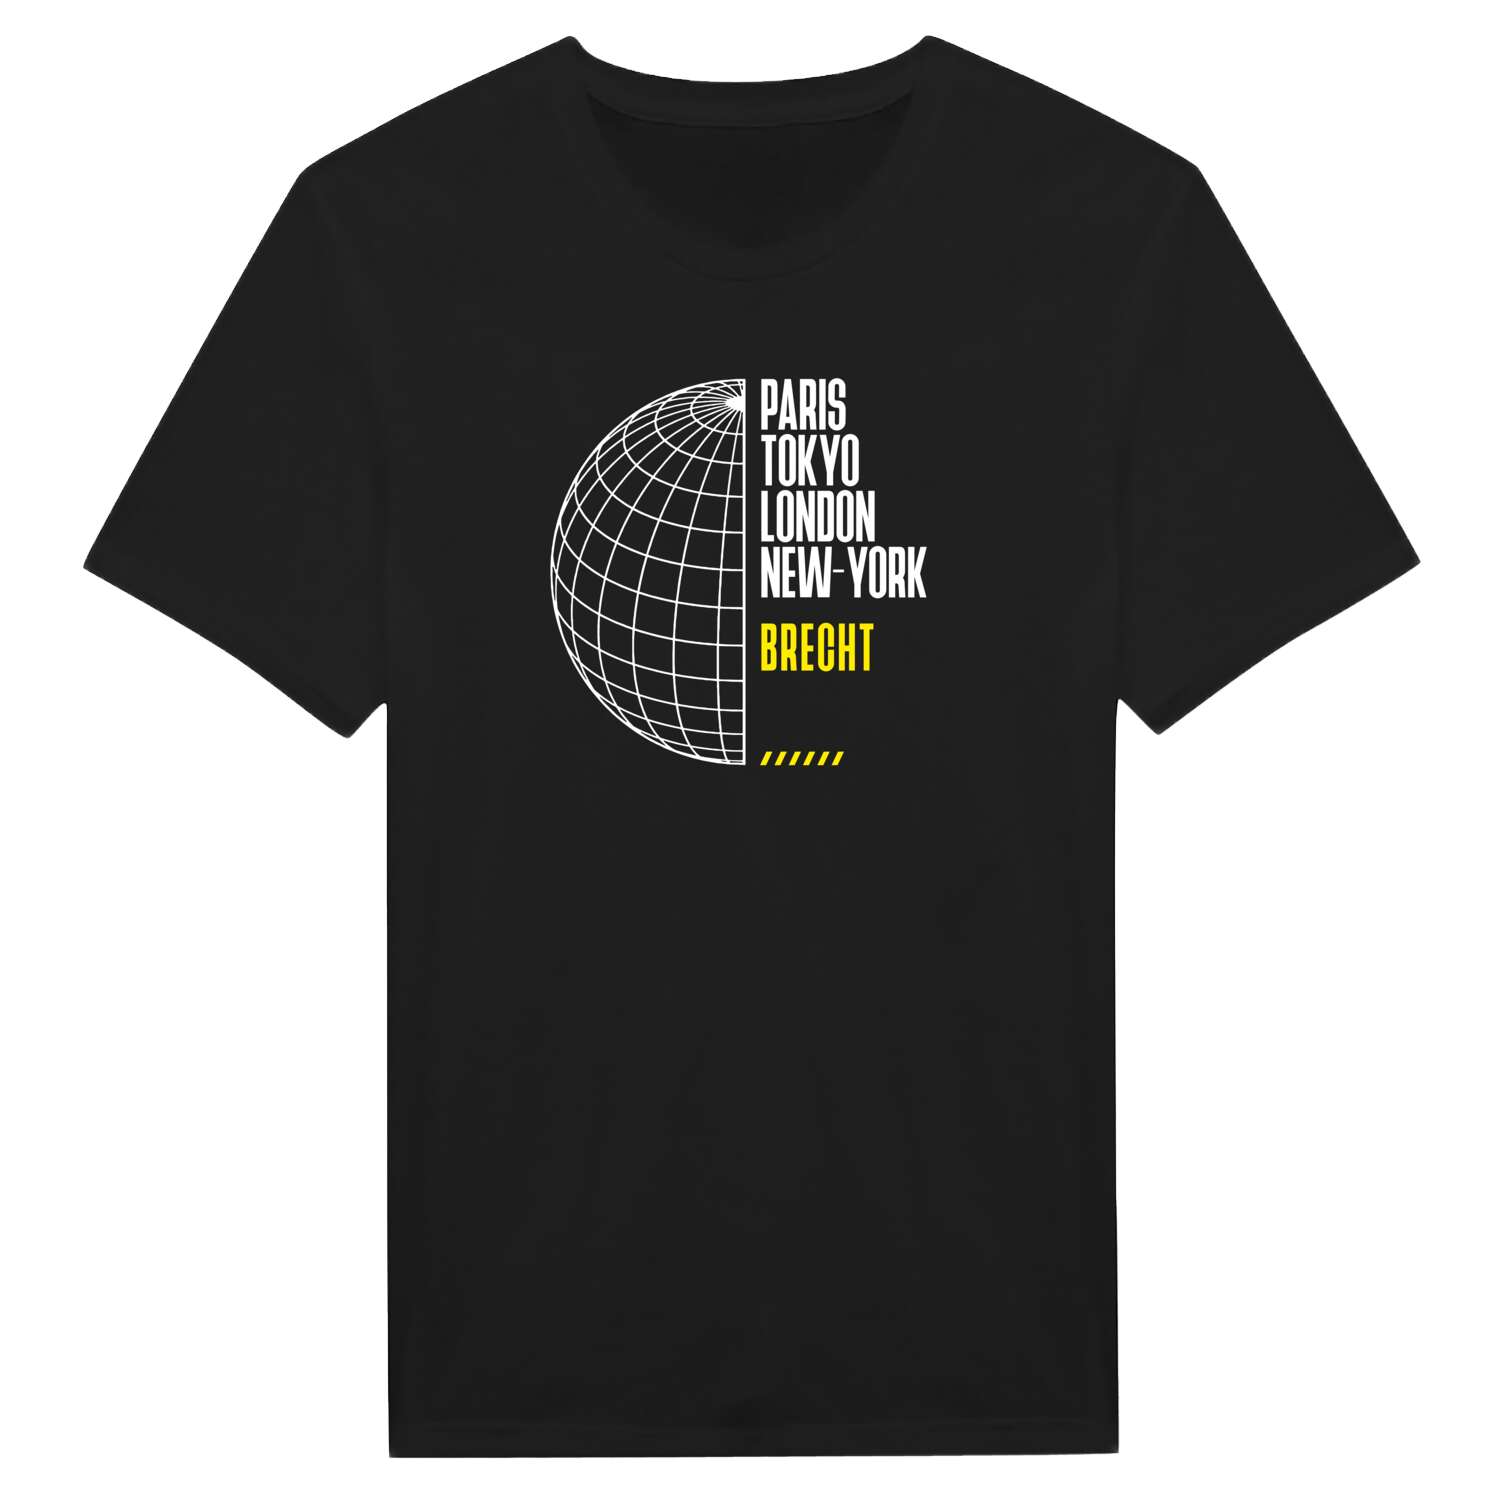 Brecht T-Shirt »Paris Tokyo London«